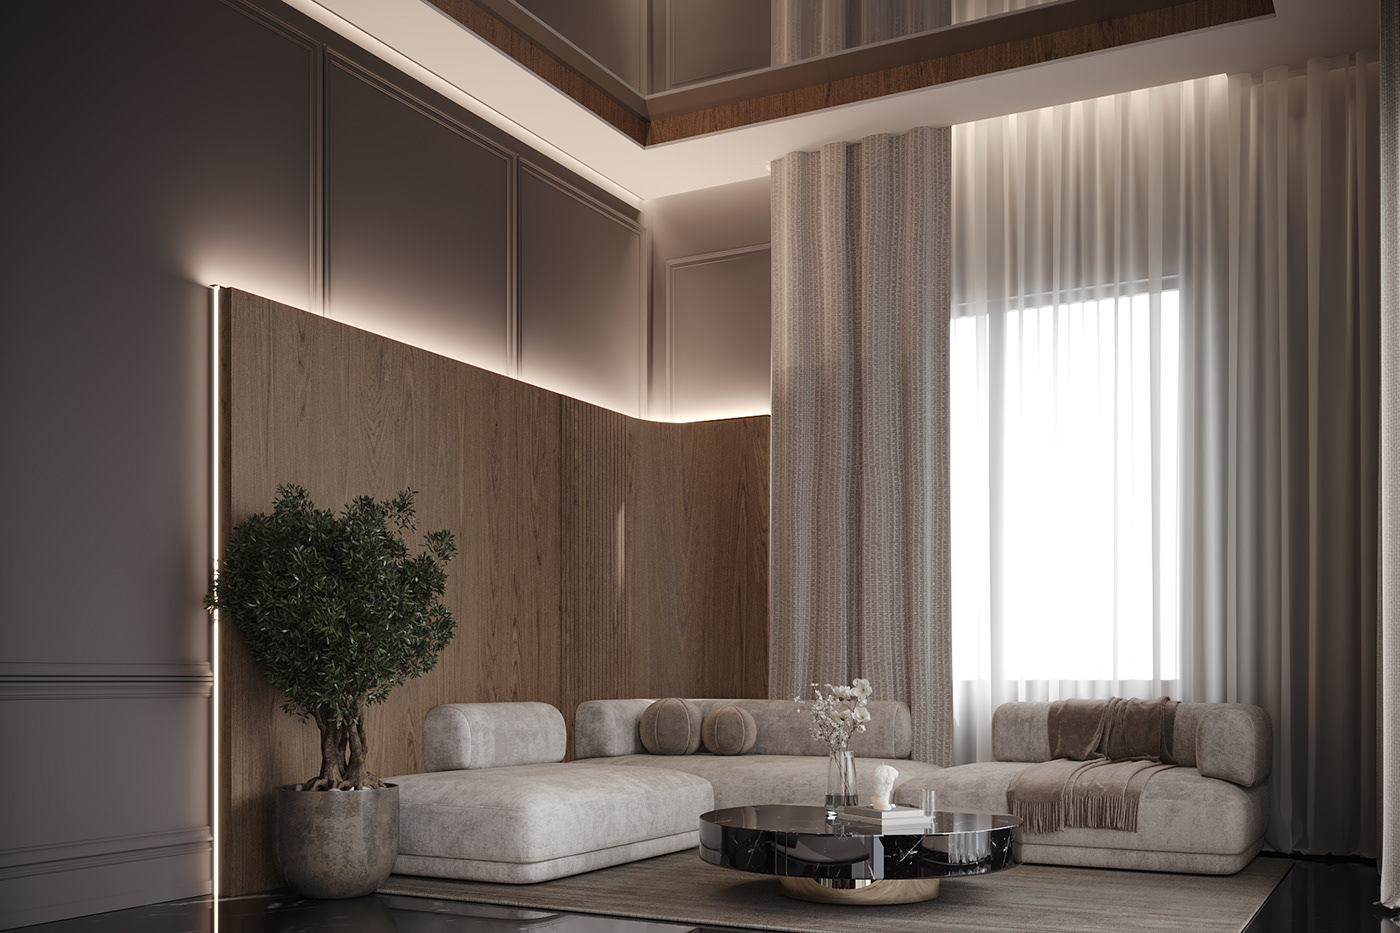 design interior design  architecture visualization Render 3ds max modern 3D corona